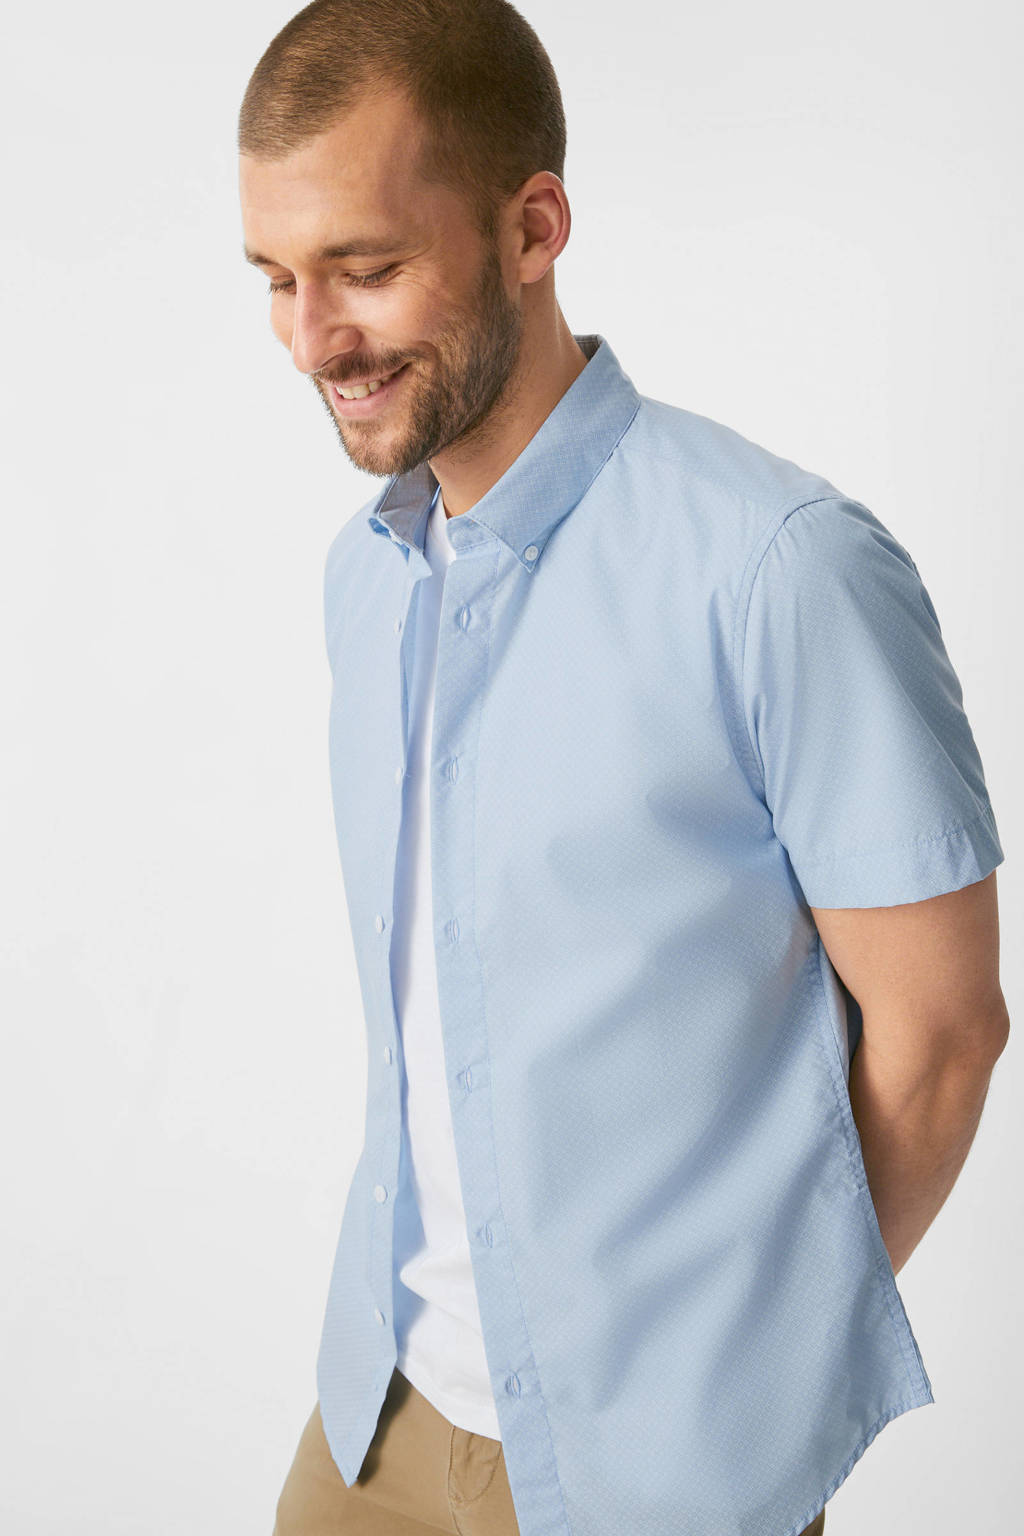 Lichtblauwe heren C&A slim fit overhemd van polyester met all over print, korte mouwen en button down sluiting